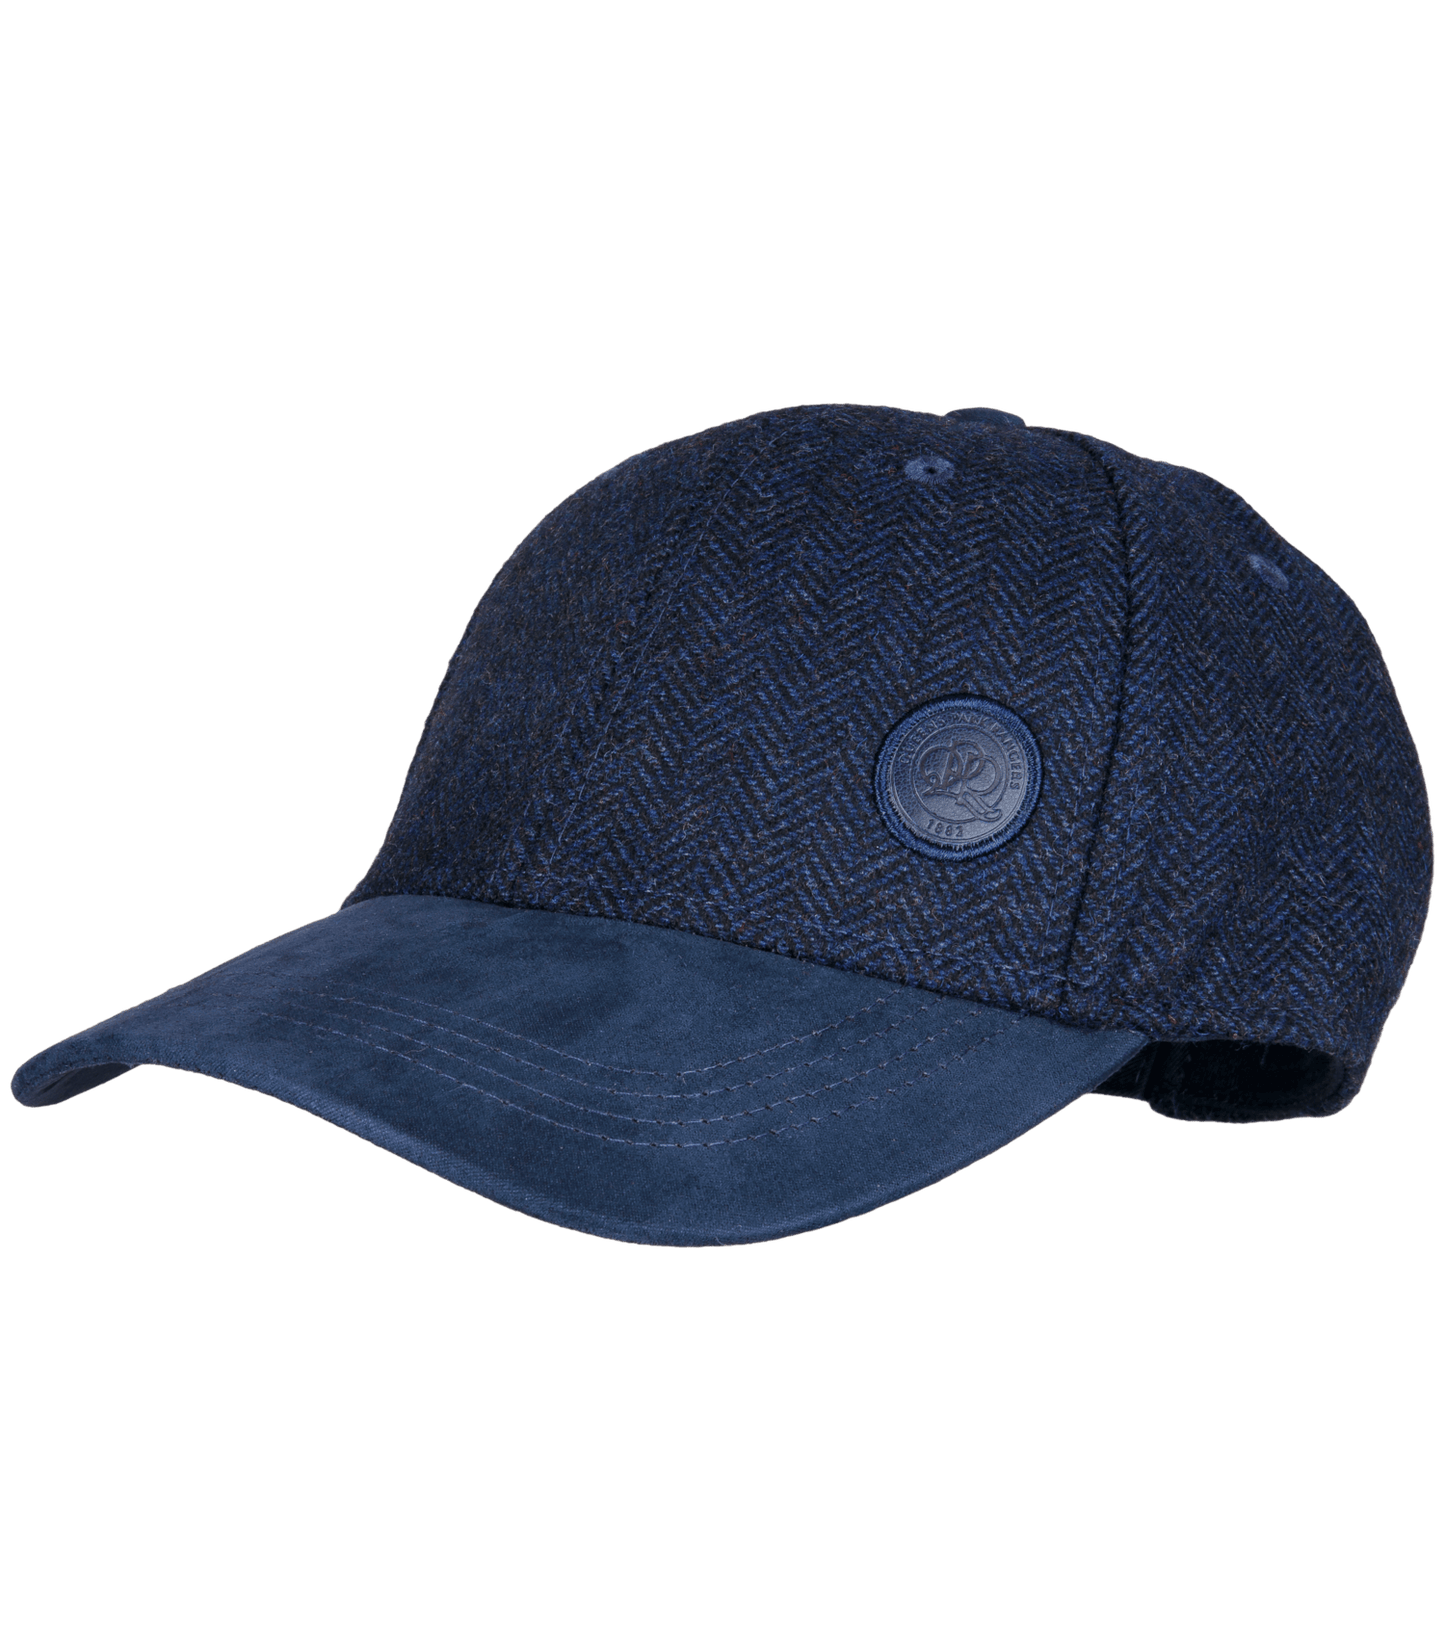 PLUSH HERRINGBONE ADULT CAP